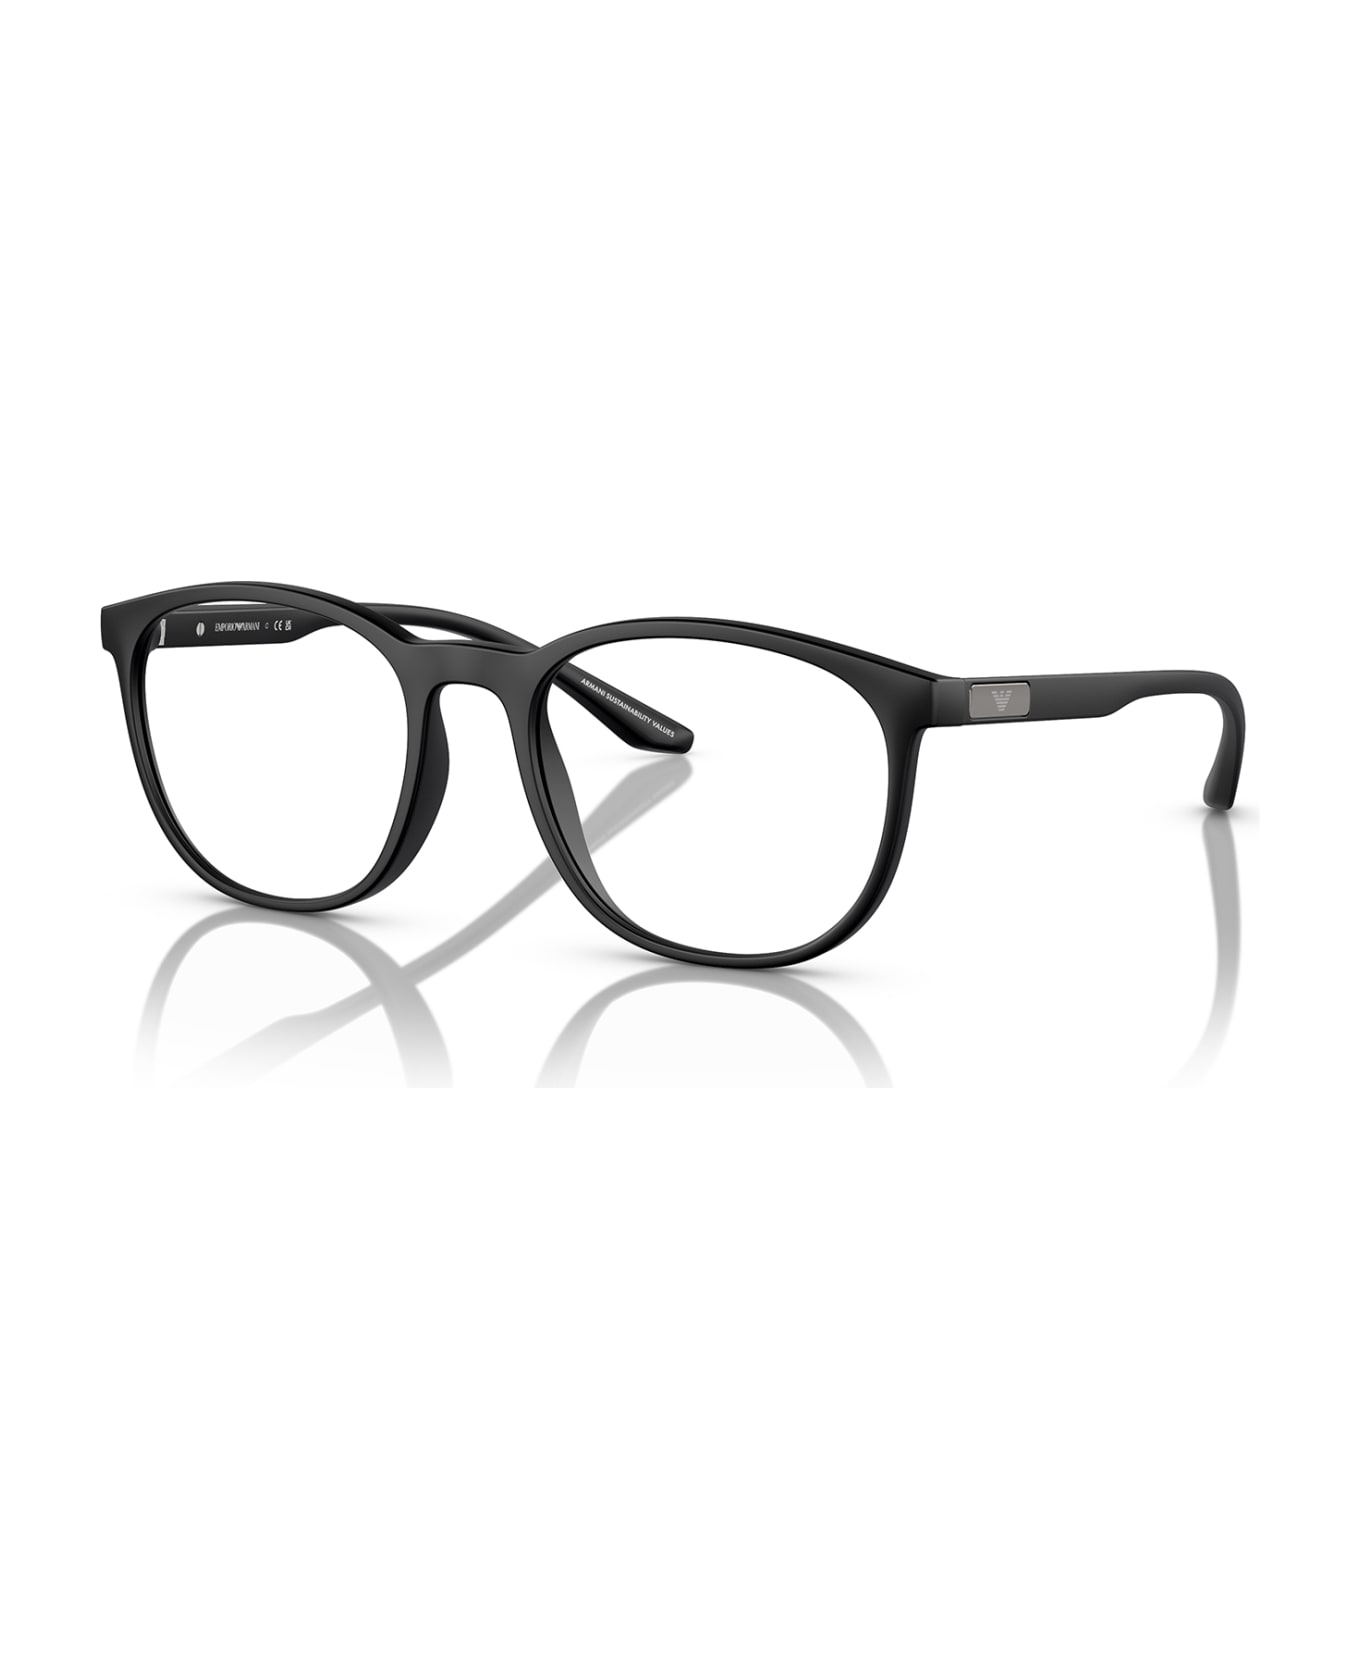 Emporio Armani Ea3229 Matte Black Glasses - Matte Black